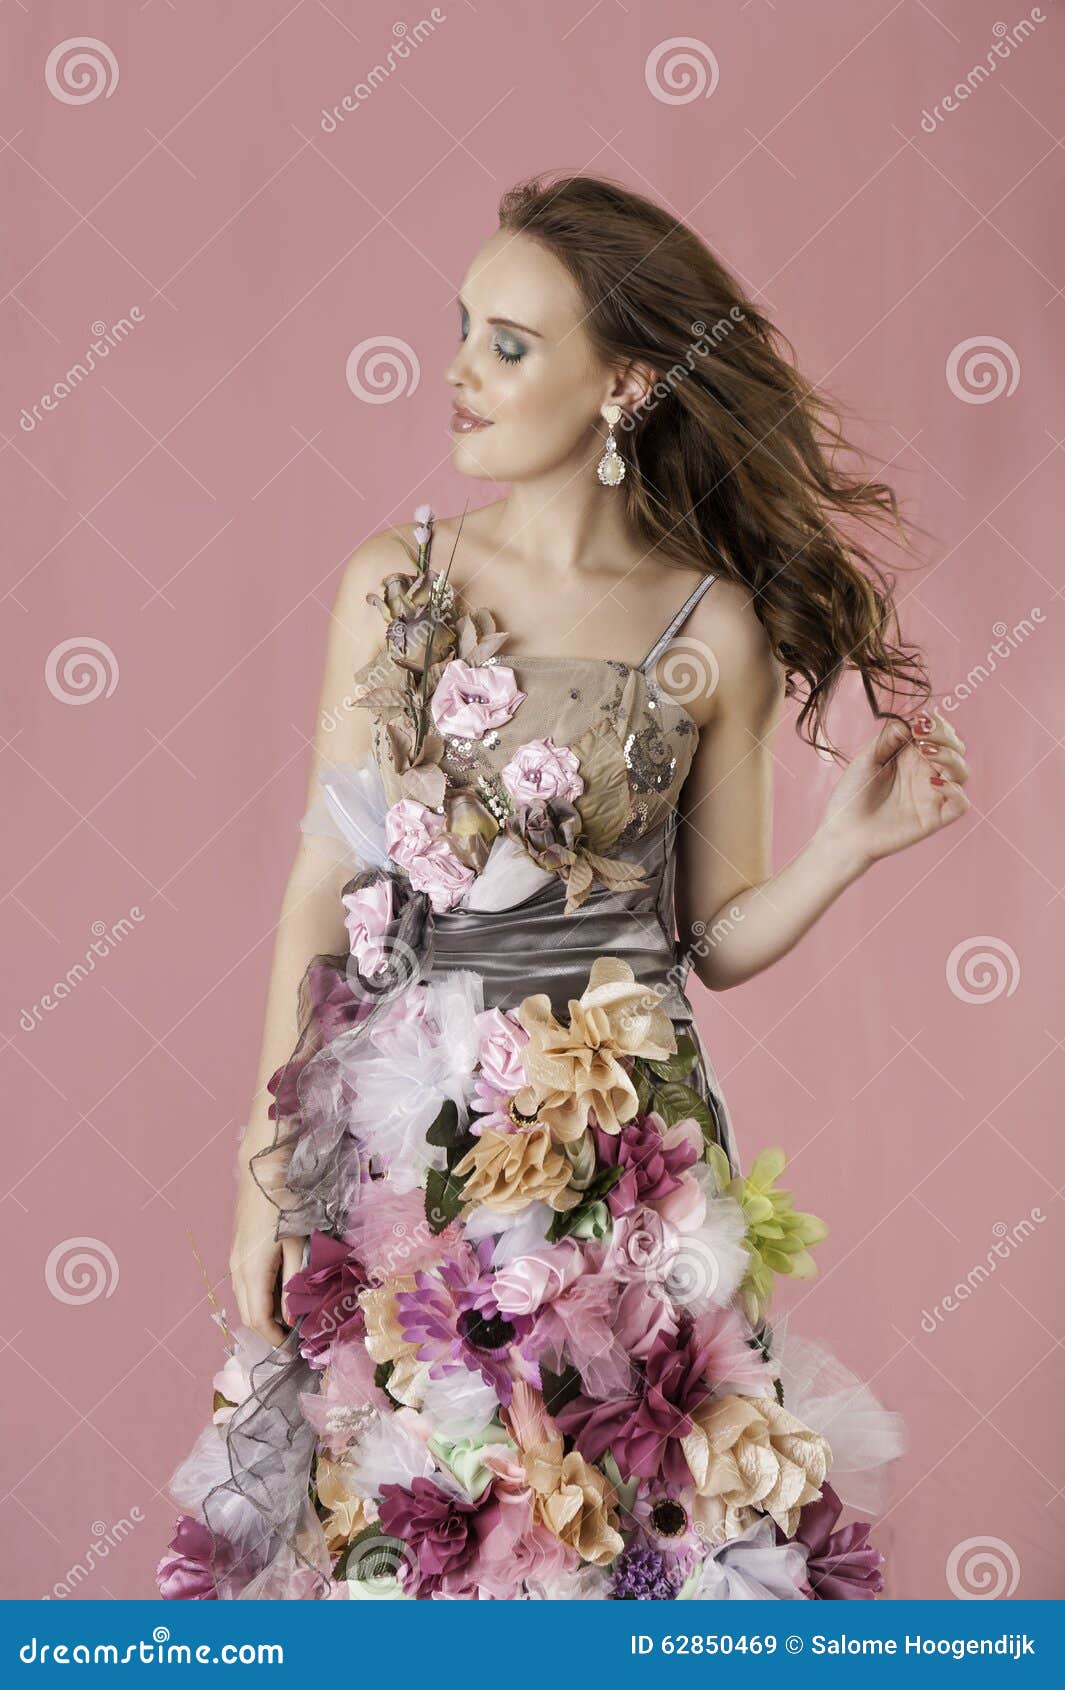 Mujer Floral De La Fantasía En Vestido De La Flor Imagen de archivo - Imagen de enrollamientos, 62850469